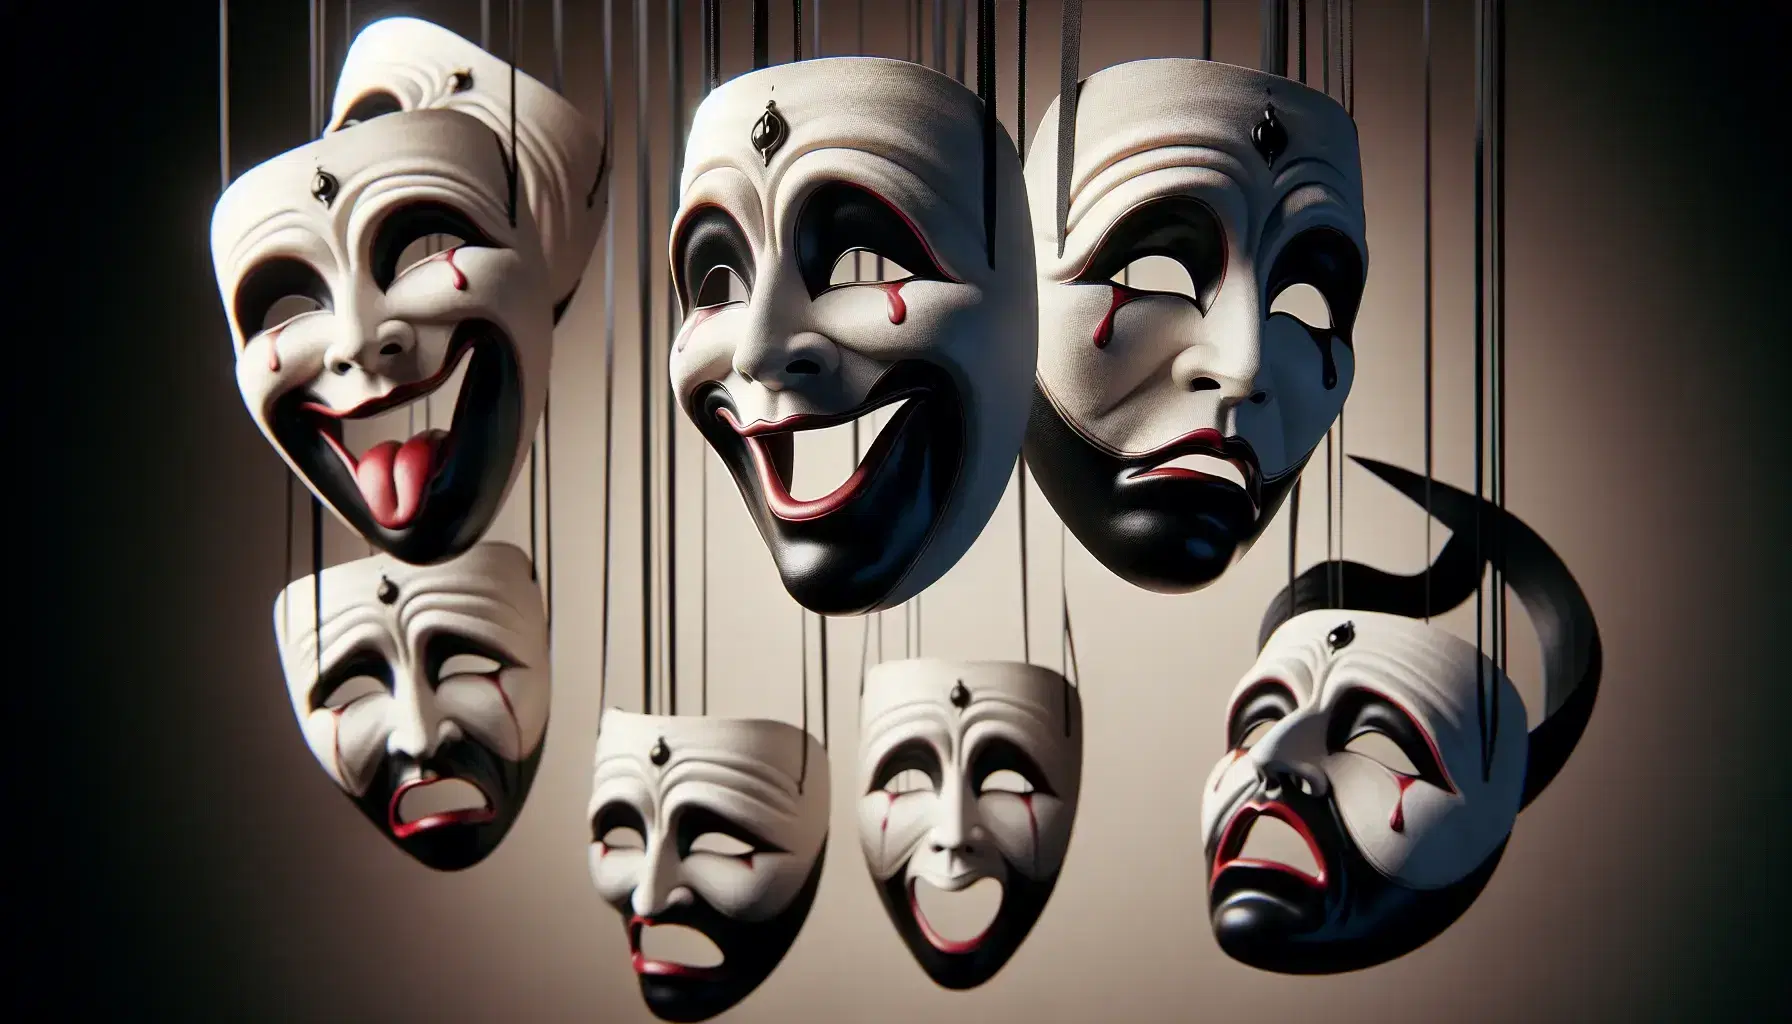 Máscaras teatrales clásicas de comedia y tragedia con expresiones exageradas, colgadas por cintas negras sobre fondo neutro.